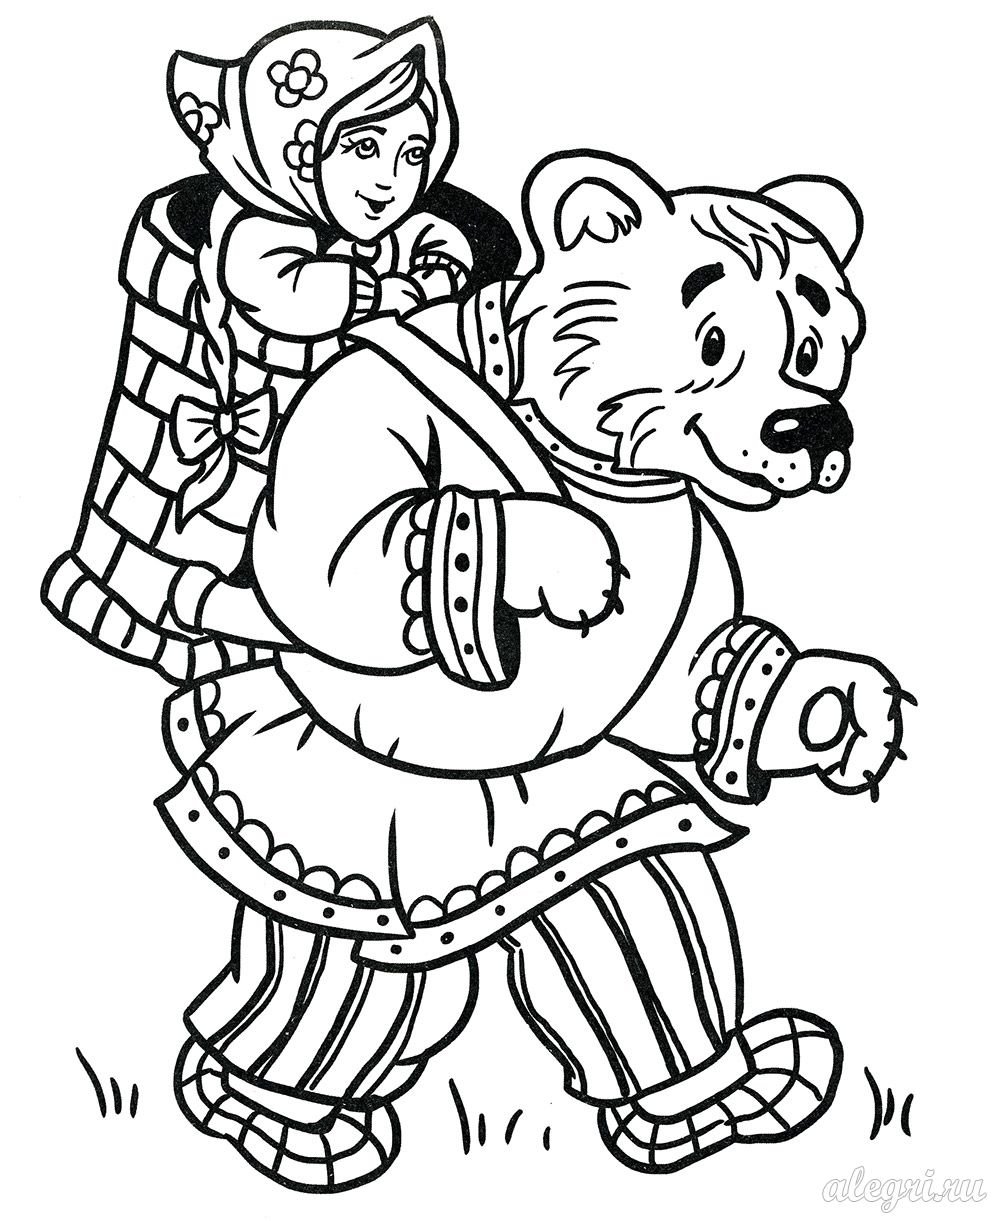 Раскраска к сказке Маша и медведь русская народная сказка